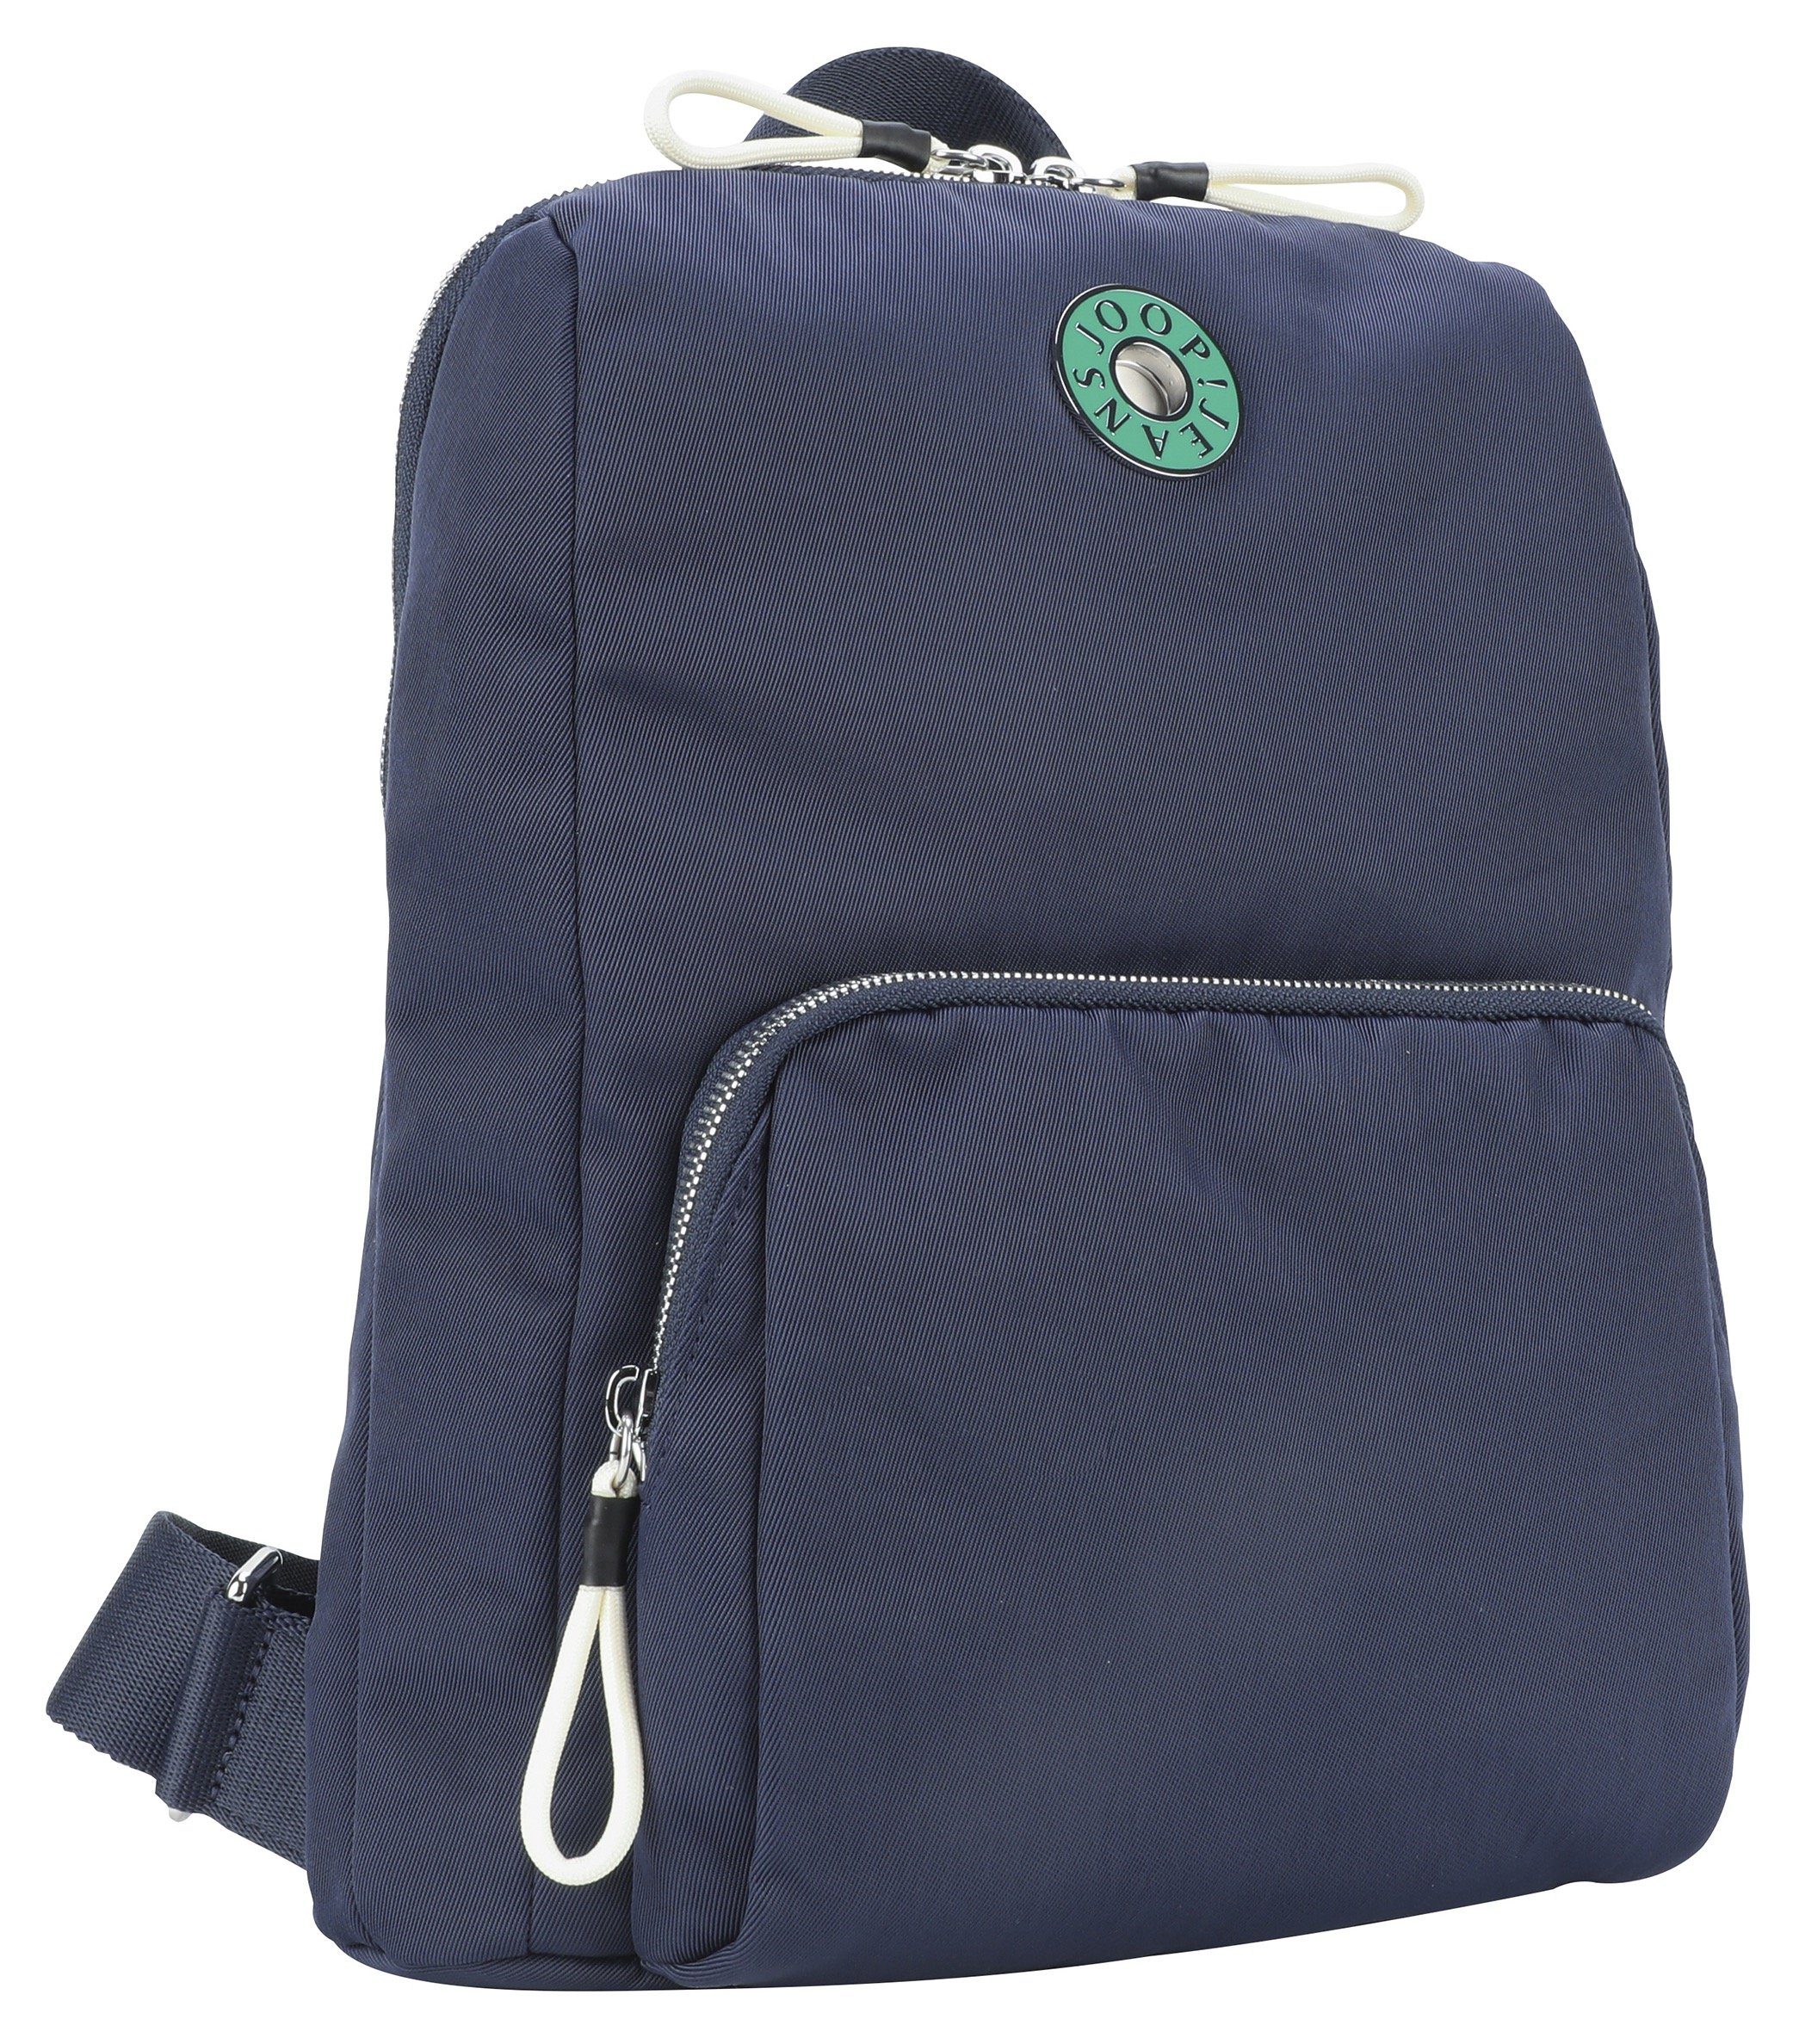 Joop Jeans Cityrucksack giocoso nivia dunkelblau im Design backpack praktischen mvz